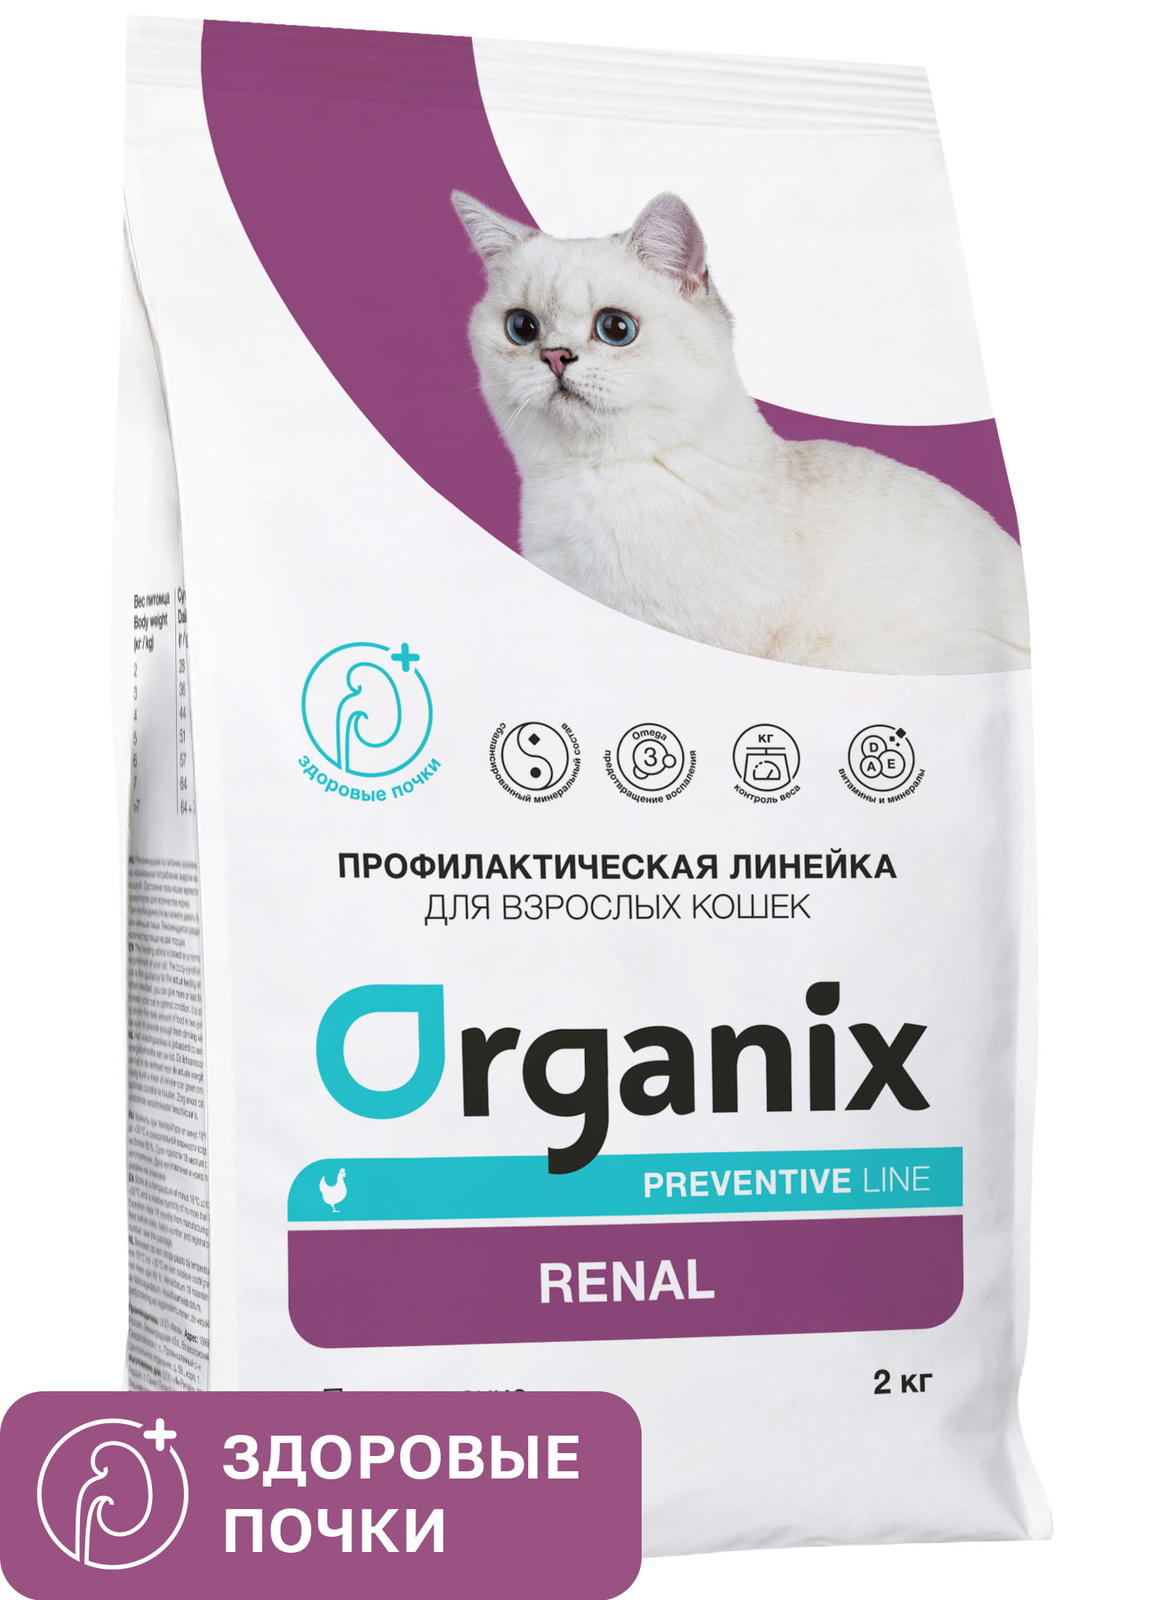 Organix Preventive Line Organix Preventive Line renal сухой корм для кошек Поддержание здоровья почек (600 г) organix preventive line organix preventive line renal сухой корм для кошек поддержание здоровья почек 600 г